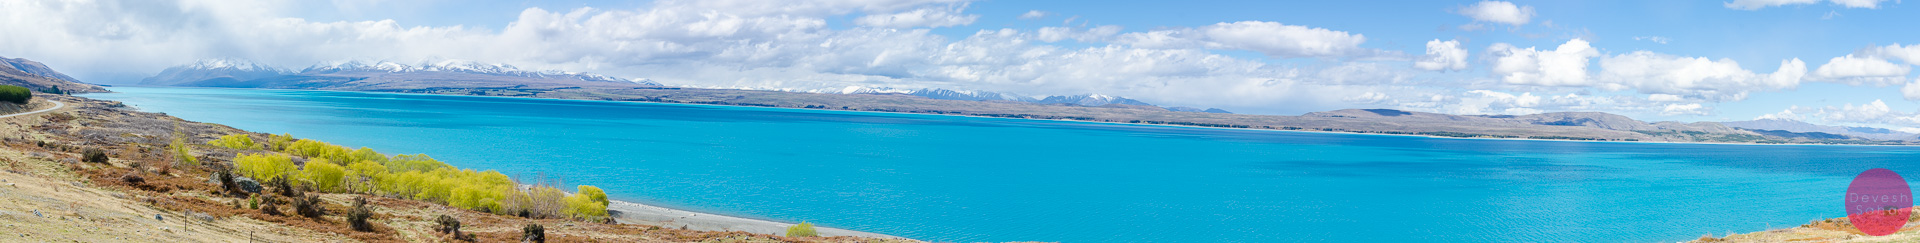 Panoramic view of Lake Pukaki, New Zealand